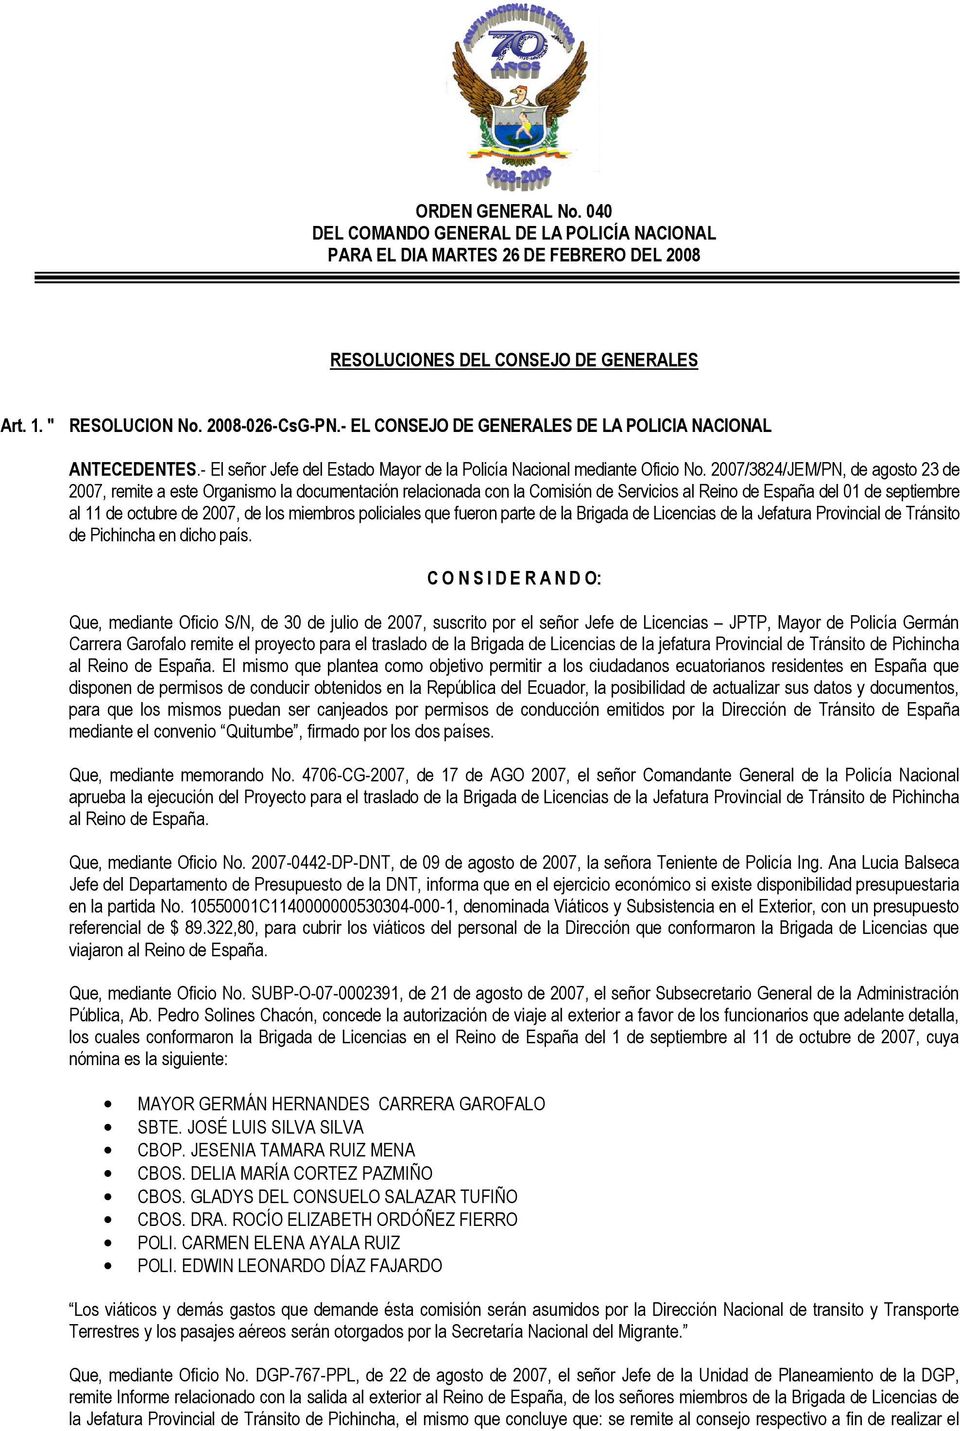 2007/3824/JEM/PN, de agosto 23 de 2007, remite a este Organismo la documentación relacionada con la Comisión de Servicios al Reino de España del 01 de septiembre al 11 de octubre de 2007, de los